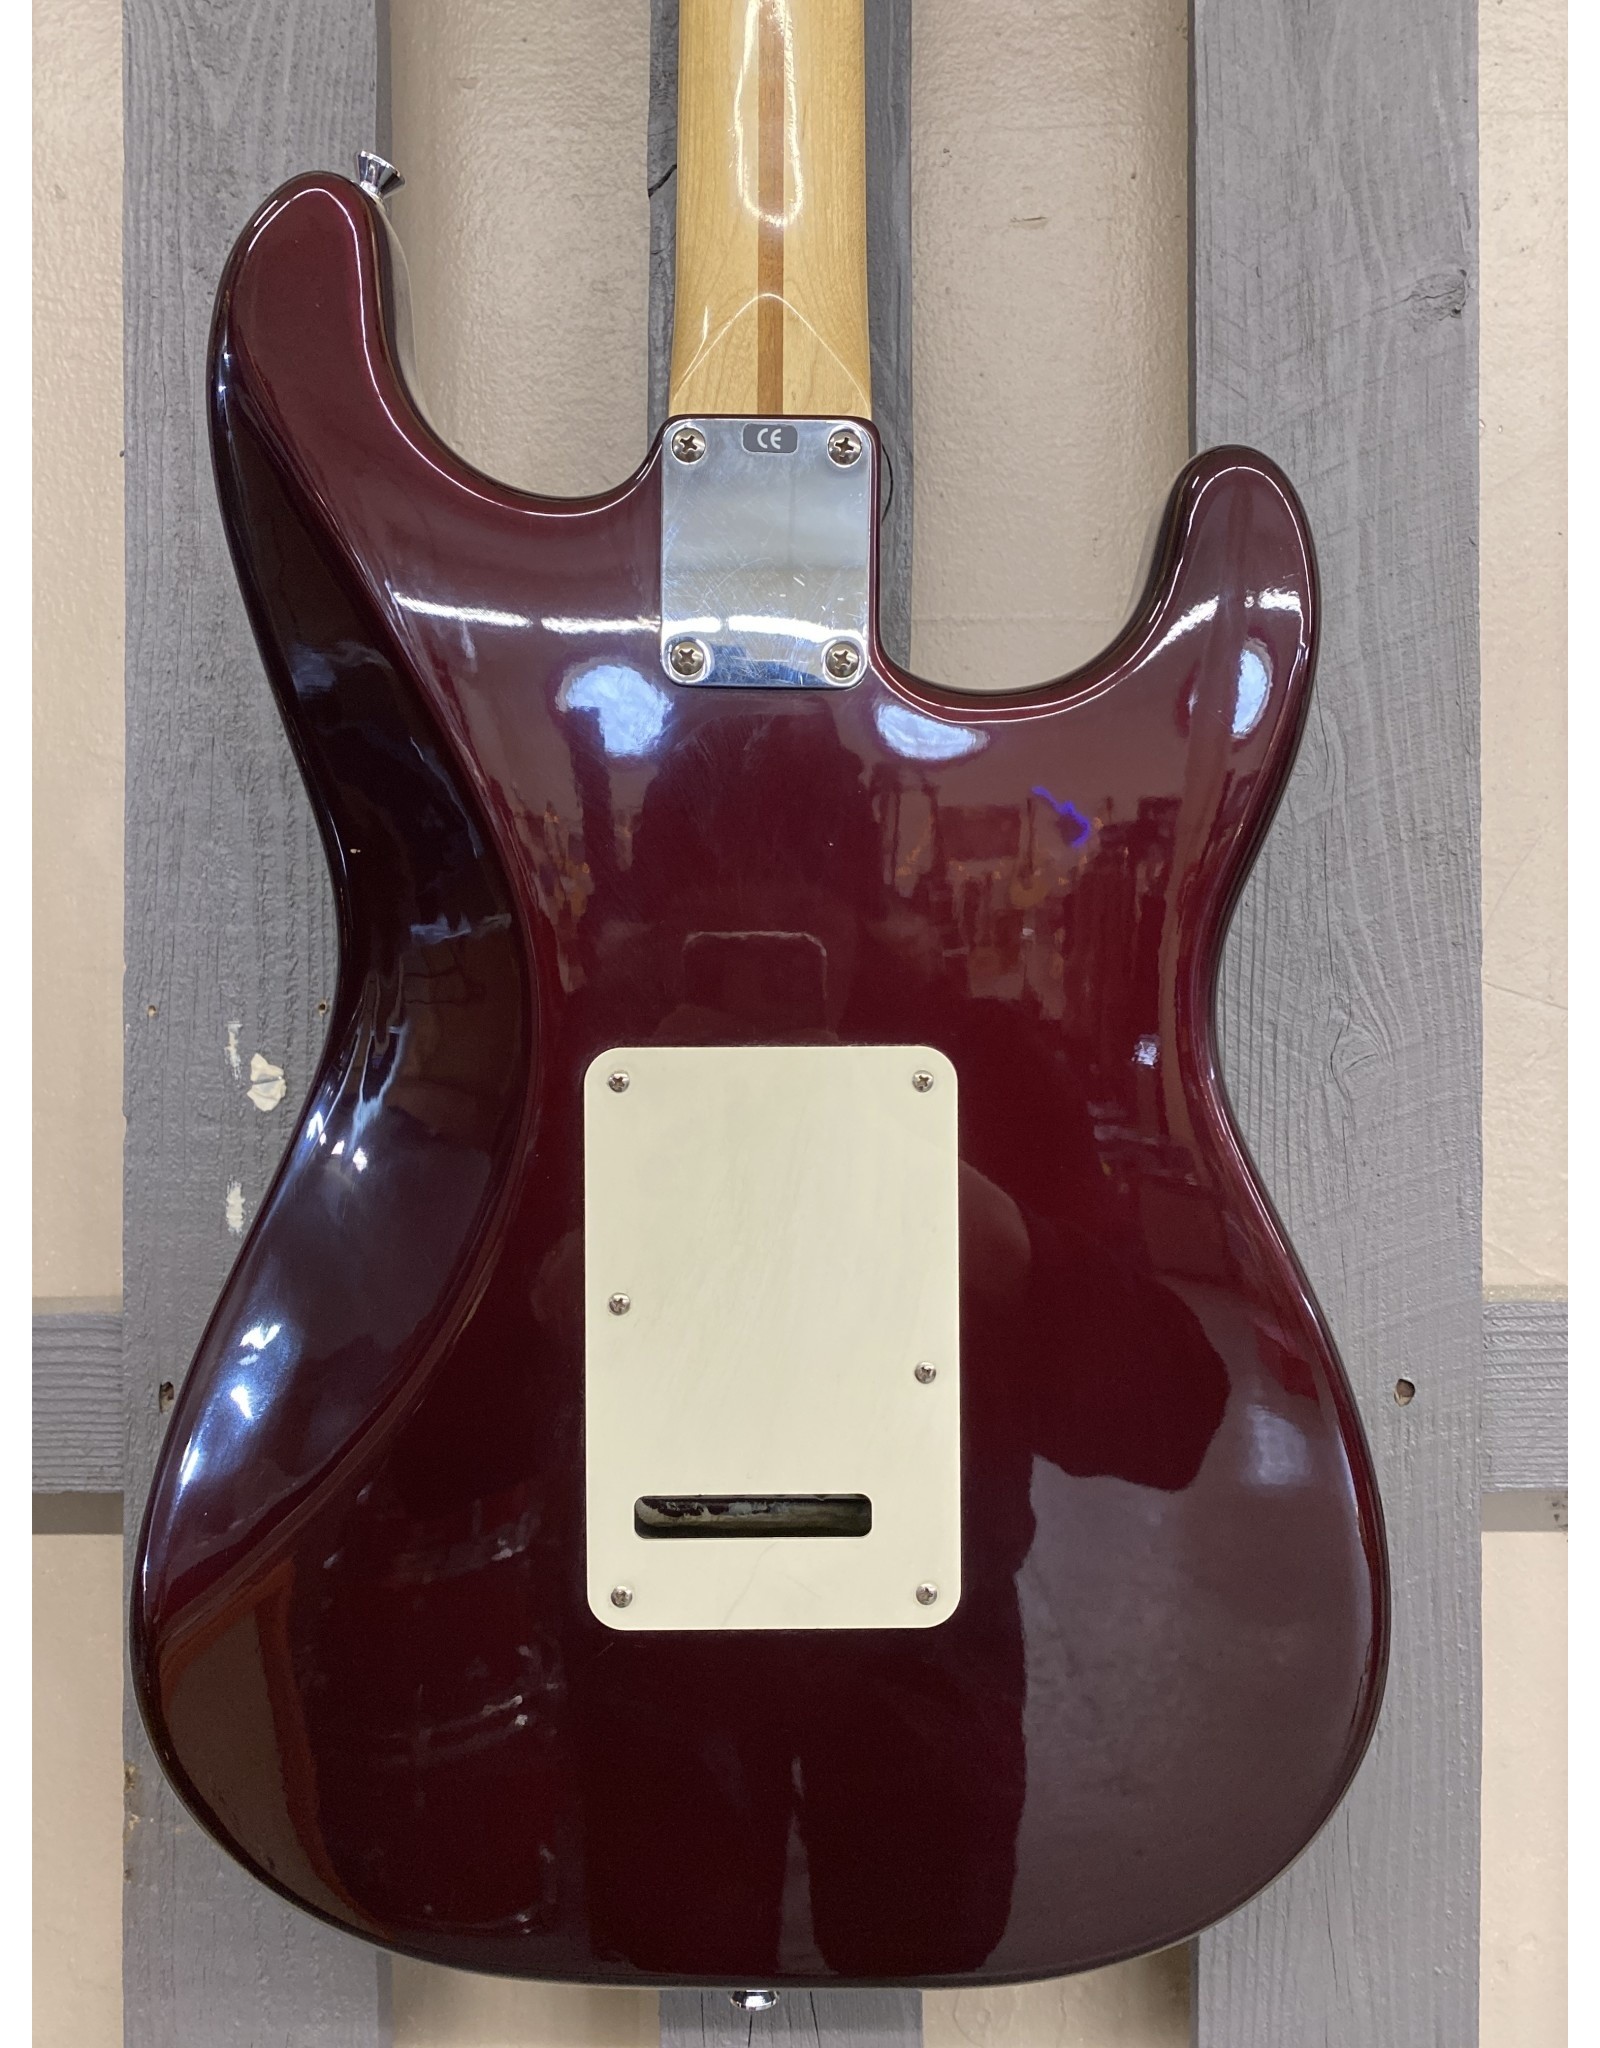 Fender Fender Stratocaster Lefty MIM 1999 (used)